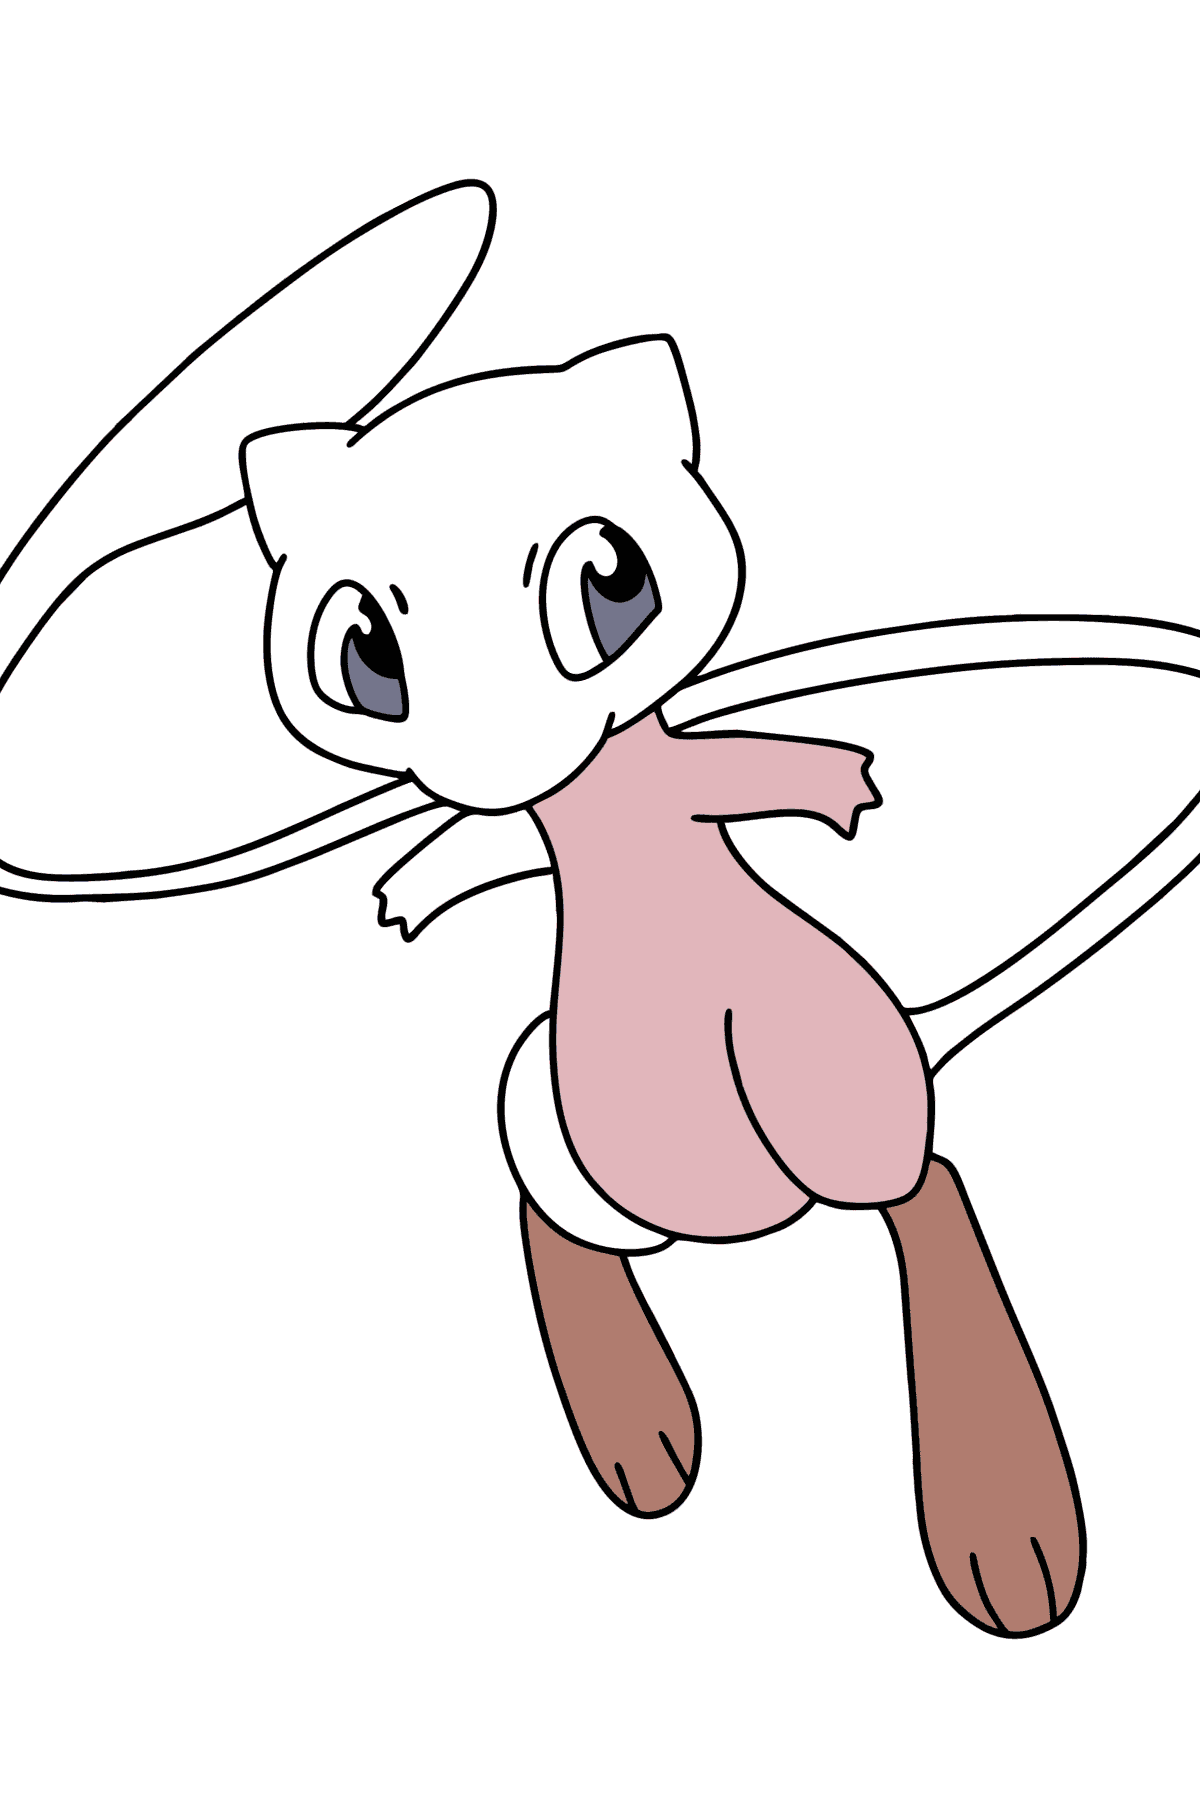 Desenho de Pokemon Go Mew para colorir - Imagens para Colorir para Crianças